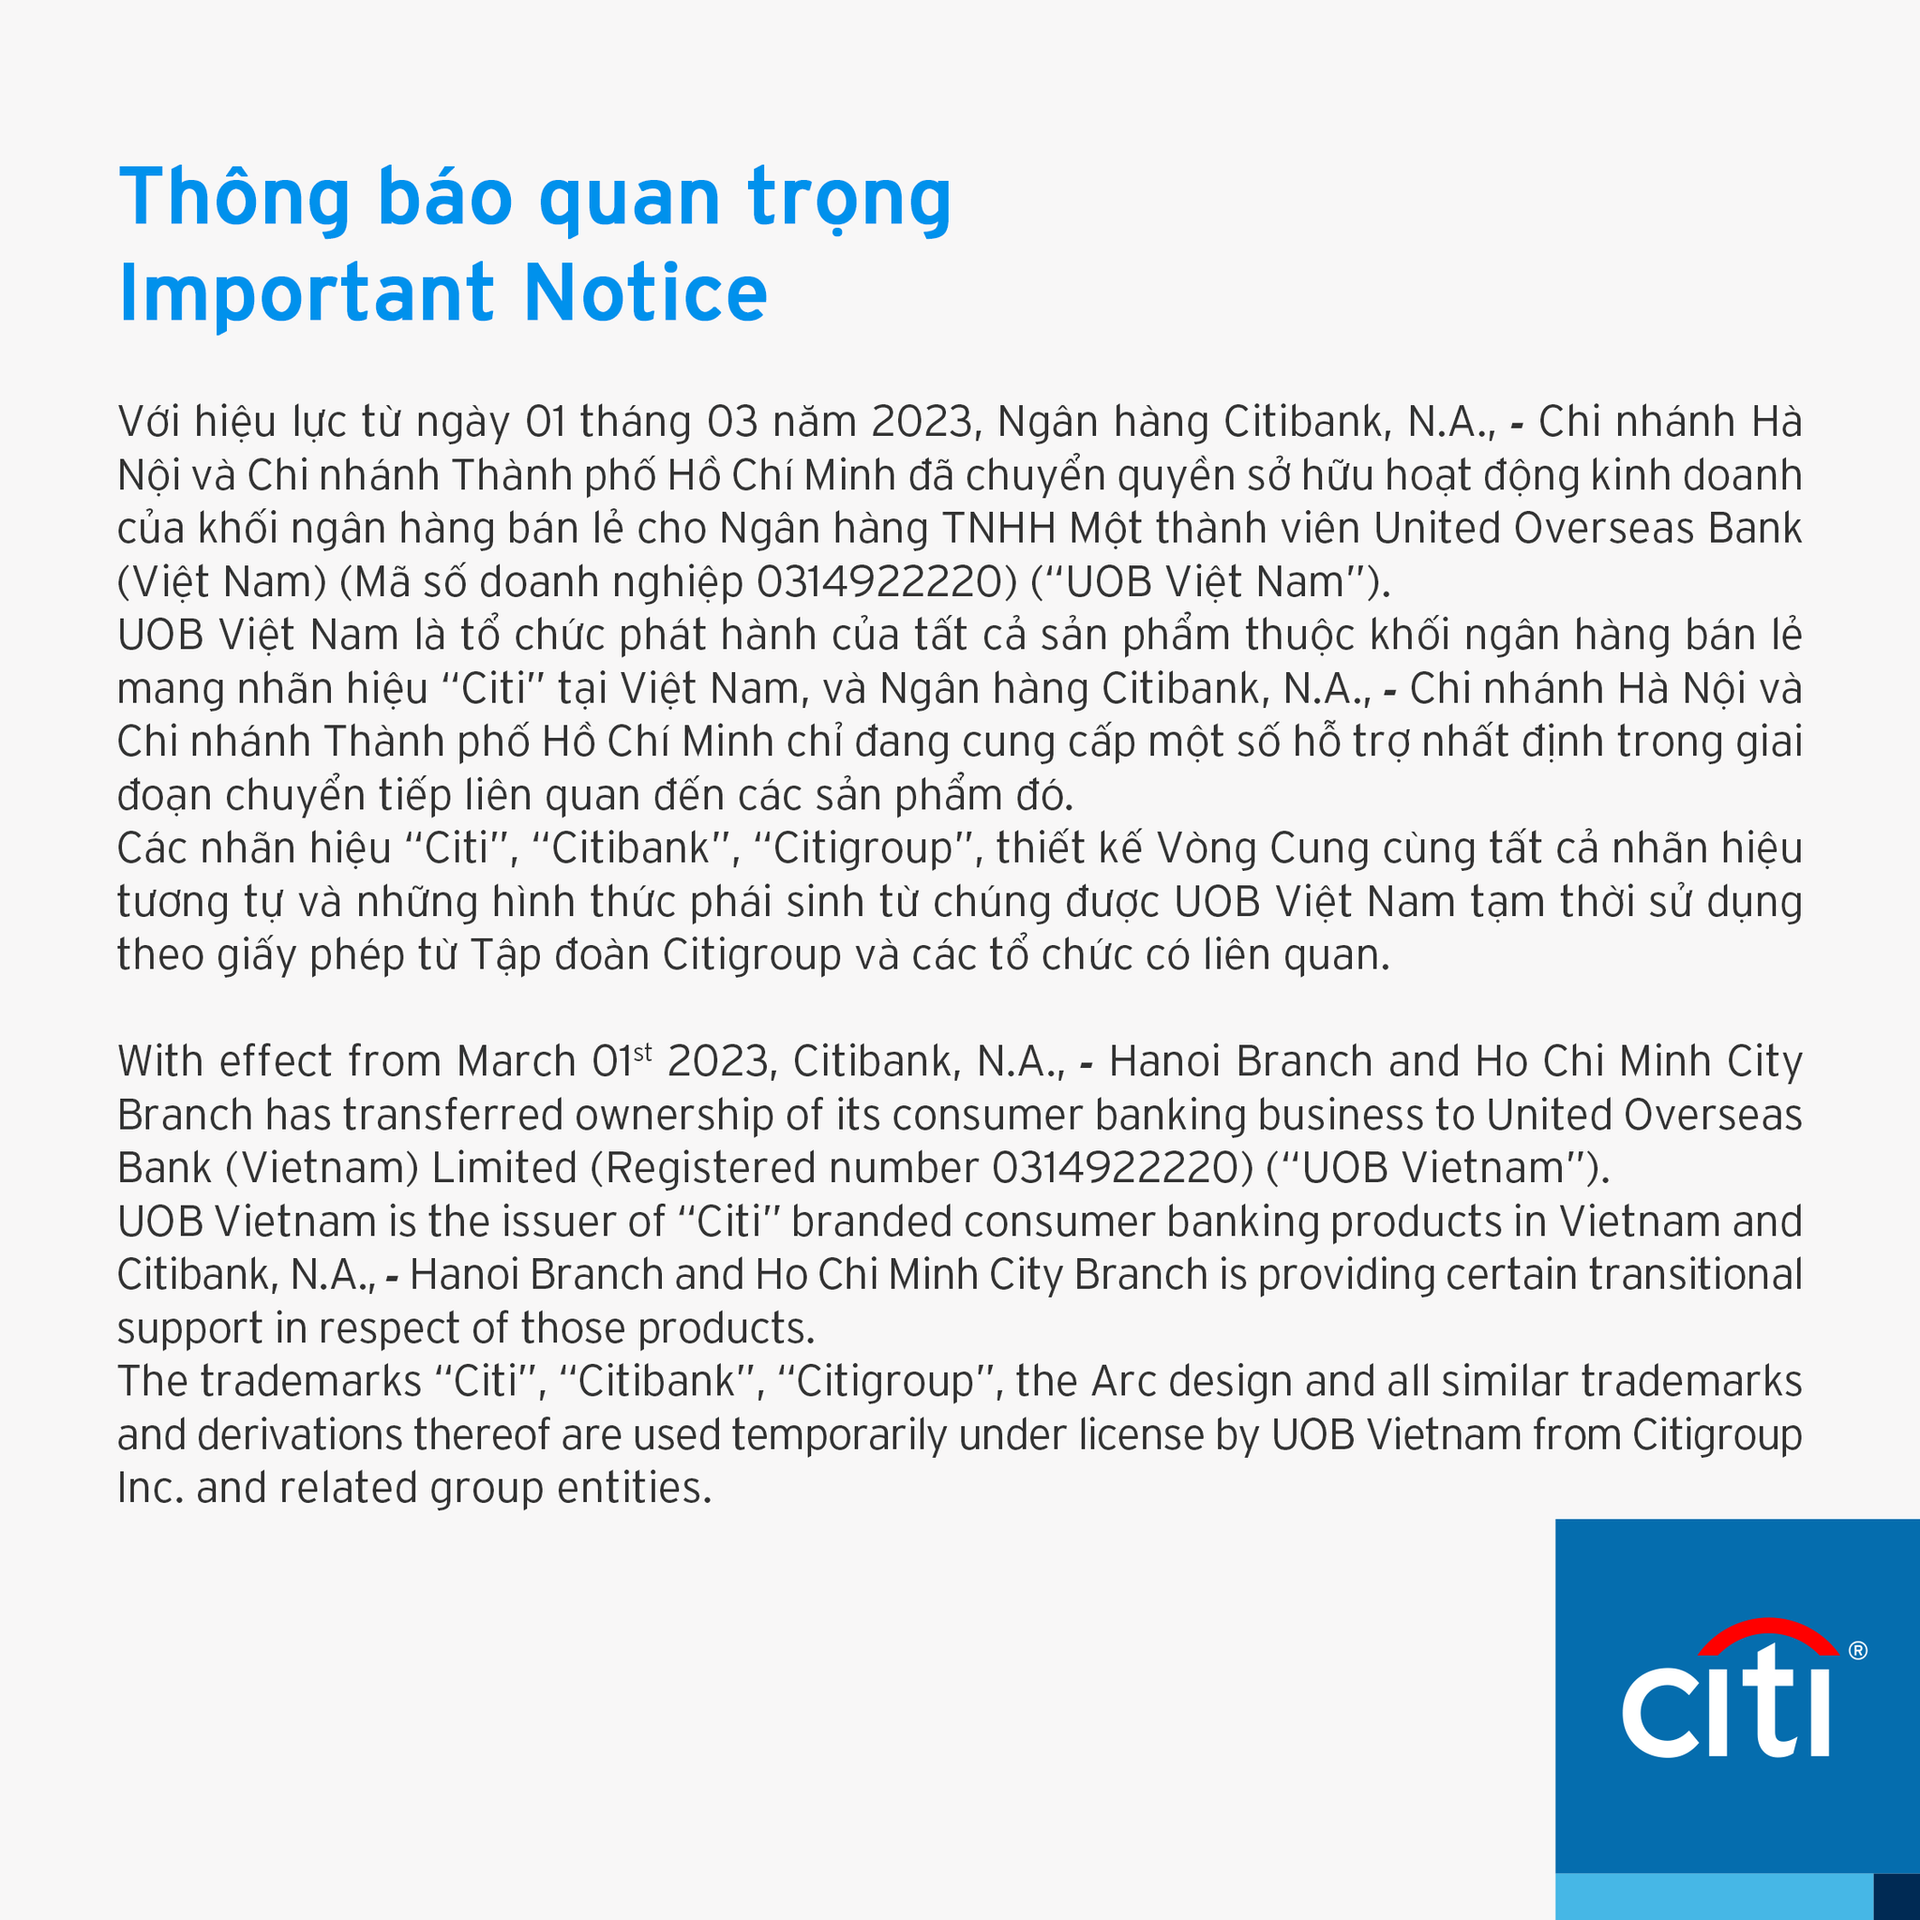 Ngân hàng UOB thâu tóm mảng Ngân hàng Tiêu dùng của Citigroup tại Việt Nam - Ảnh 2.